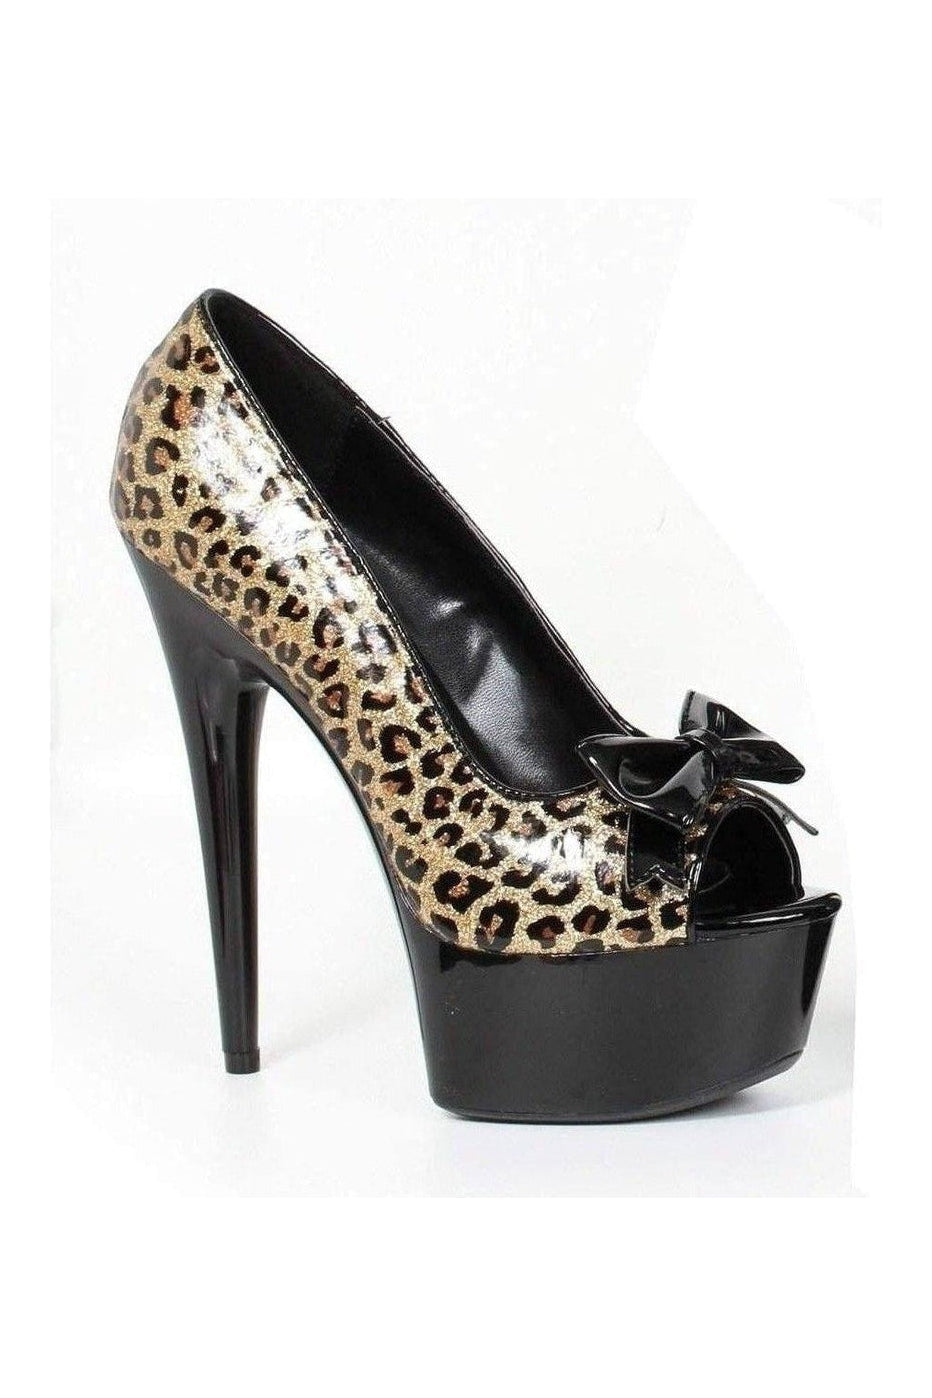 609-ROYCE Platform Pump | Leopard Patent-Ellie Shoes-Animal-Pumps-SEXYSHOES.COM